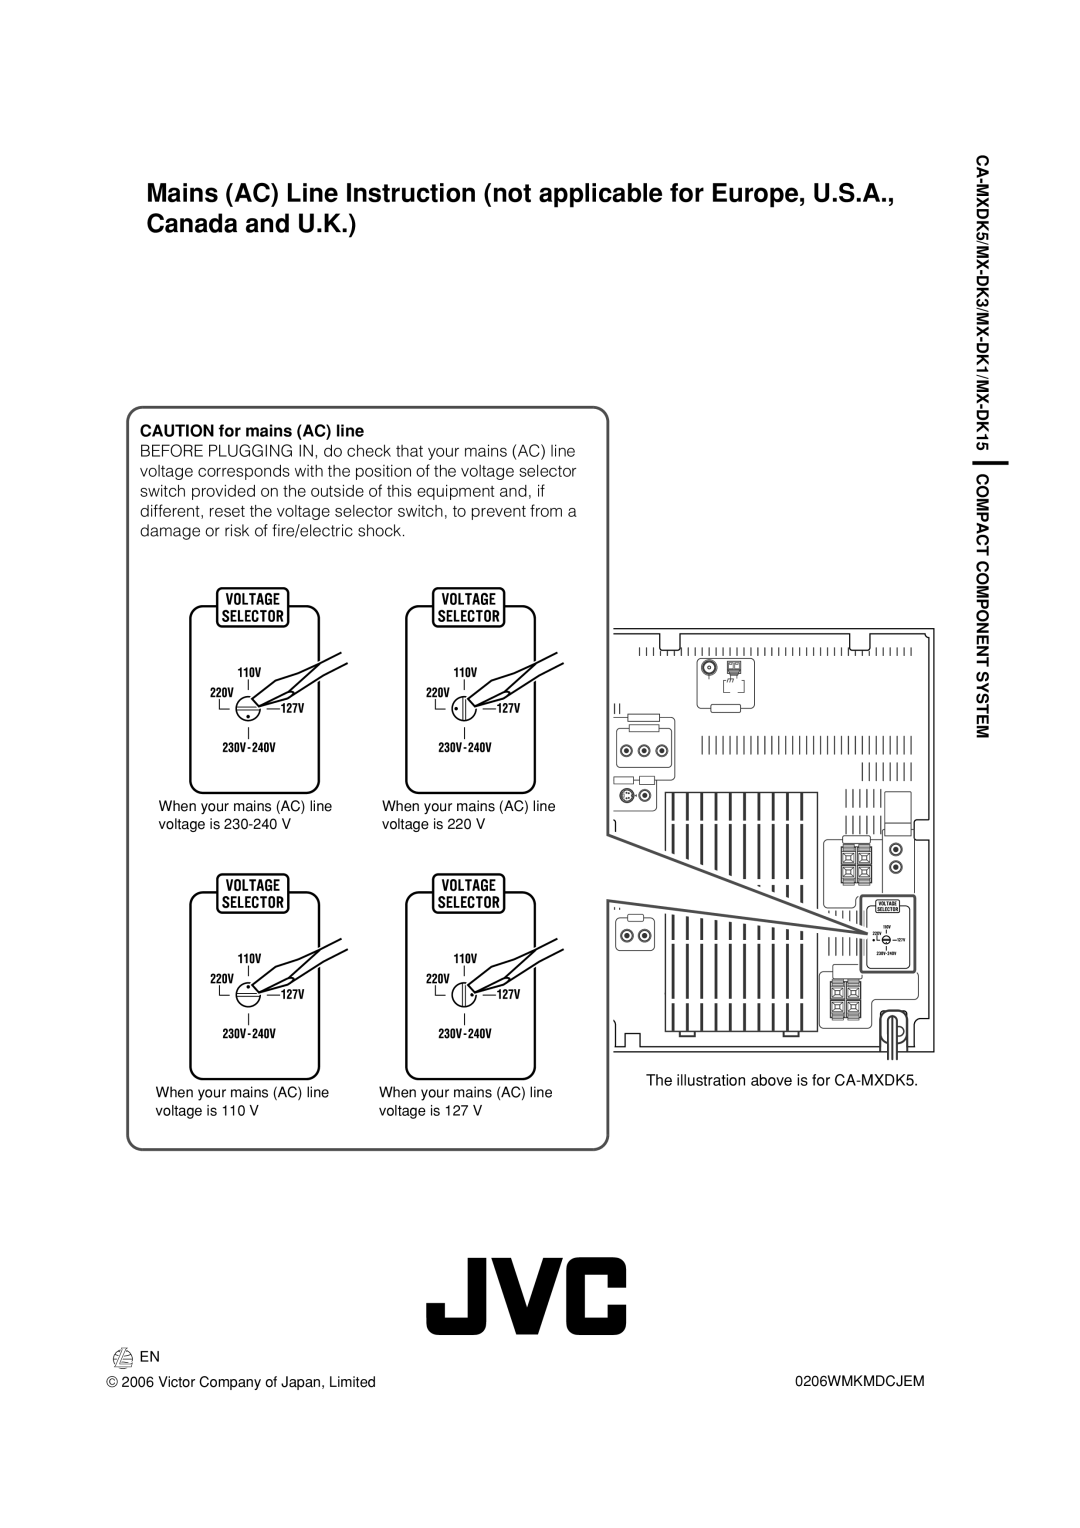 JVC MX-DK3, MX-DK15 manual CAUTION for mains AC line 